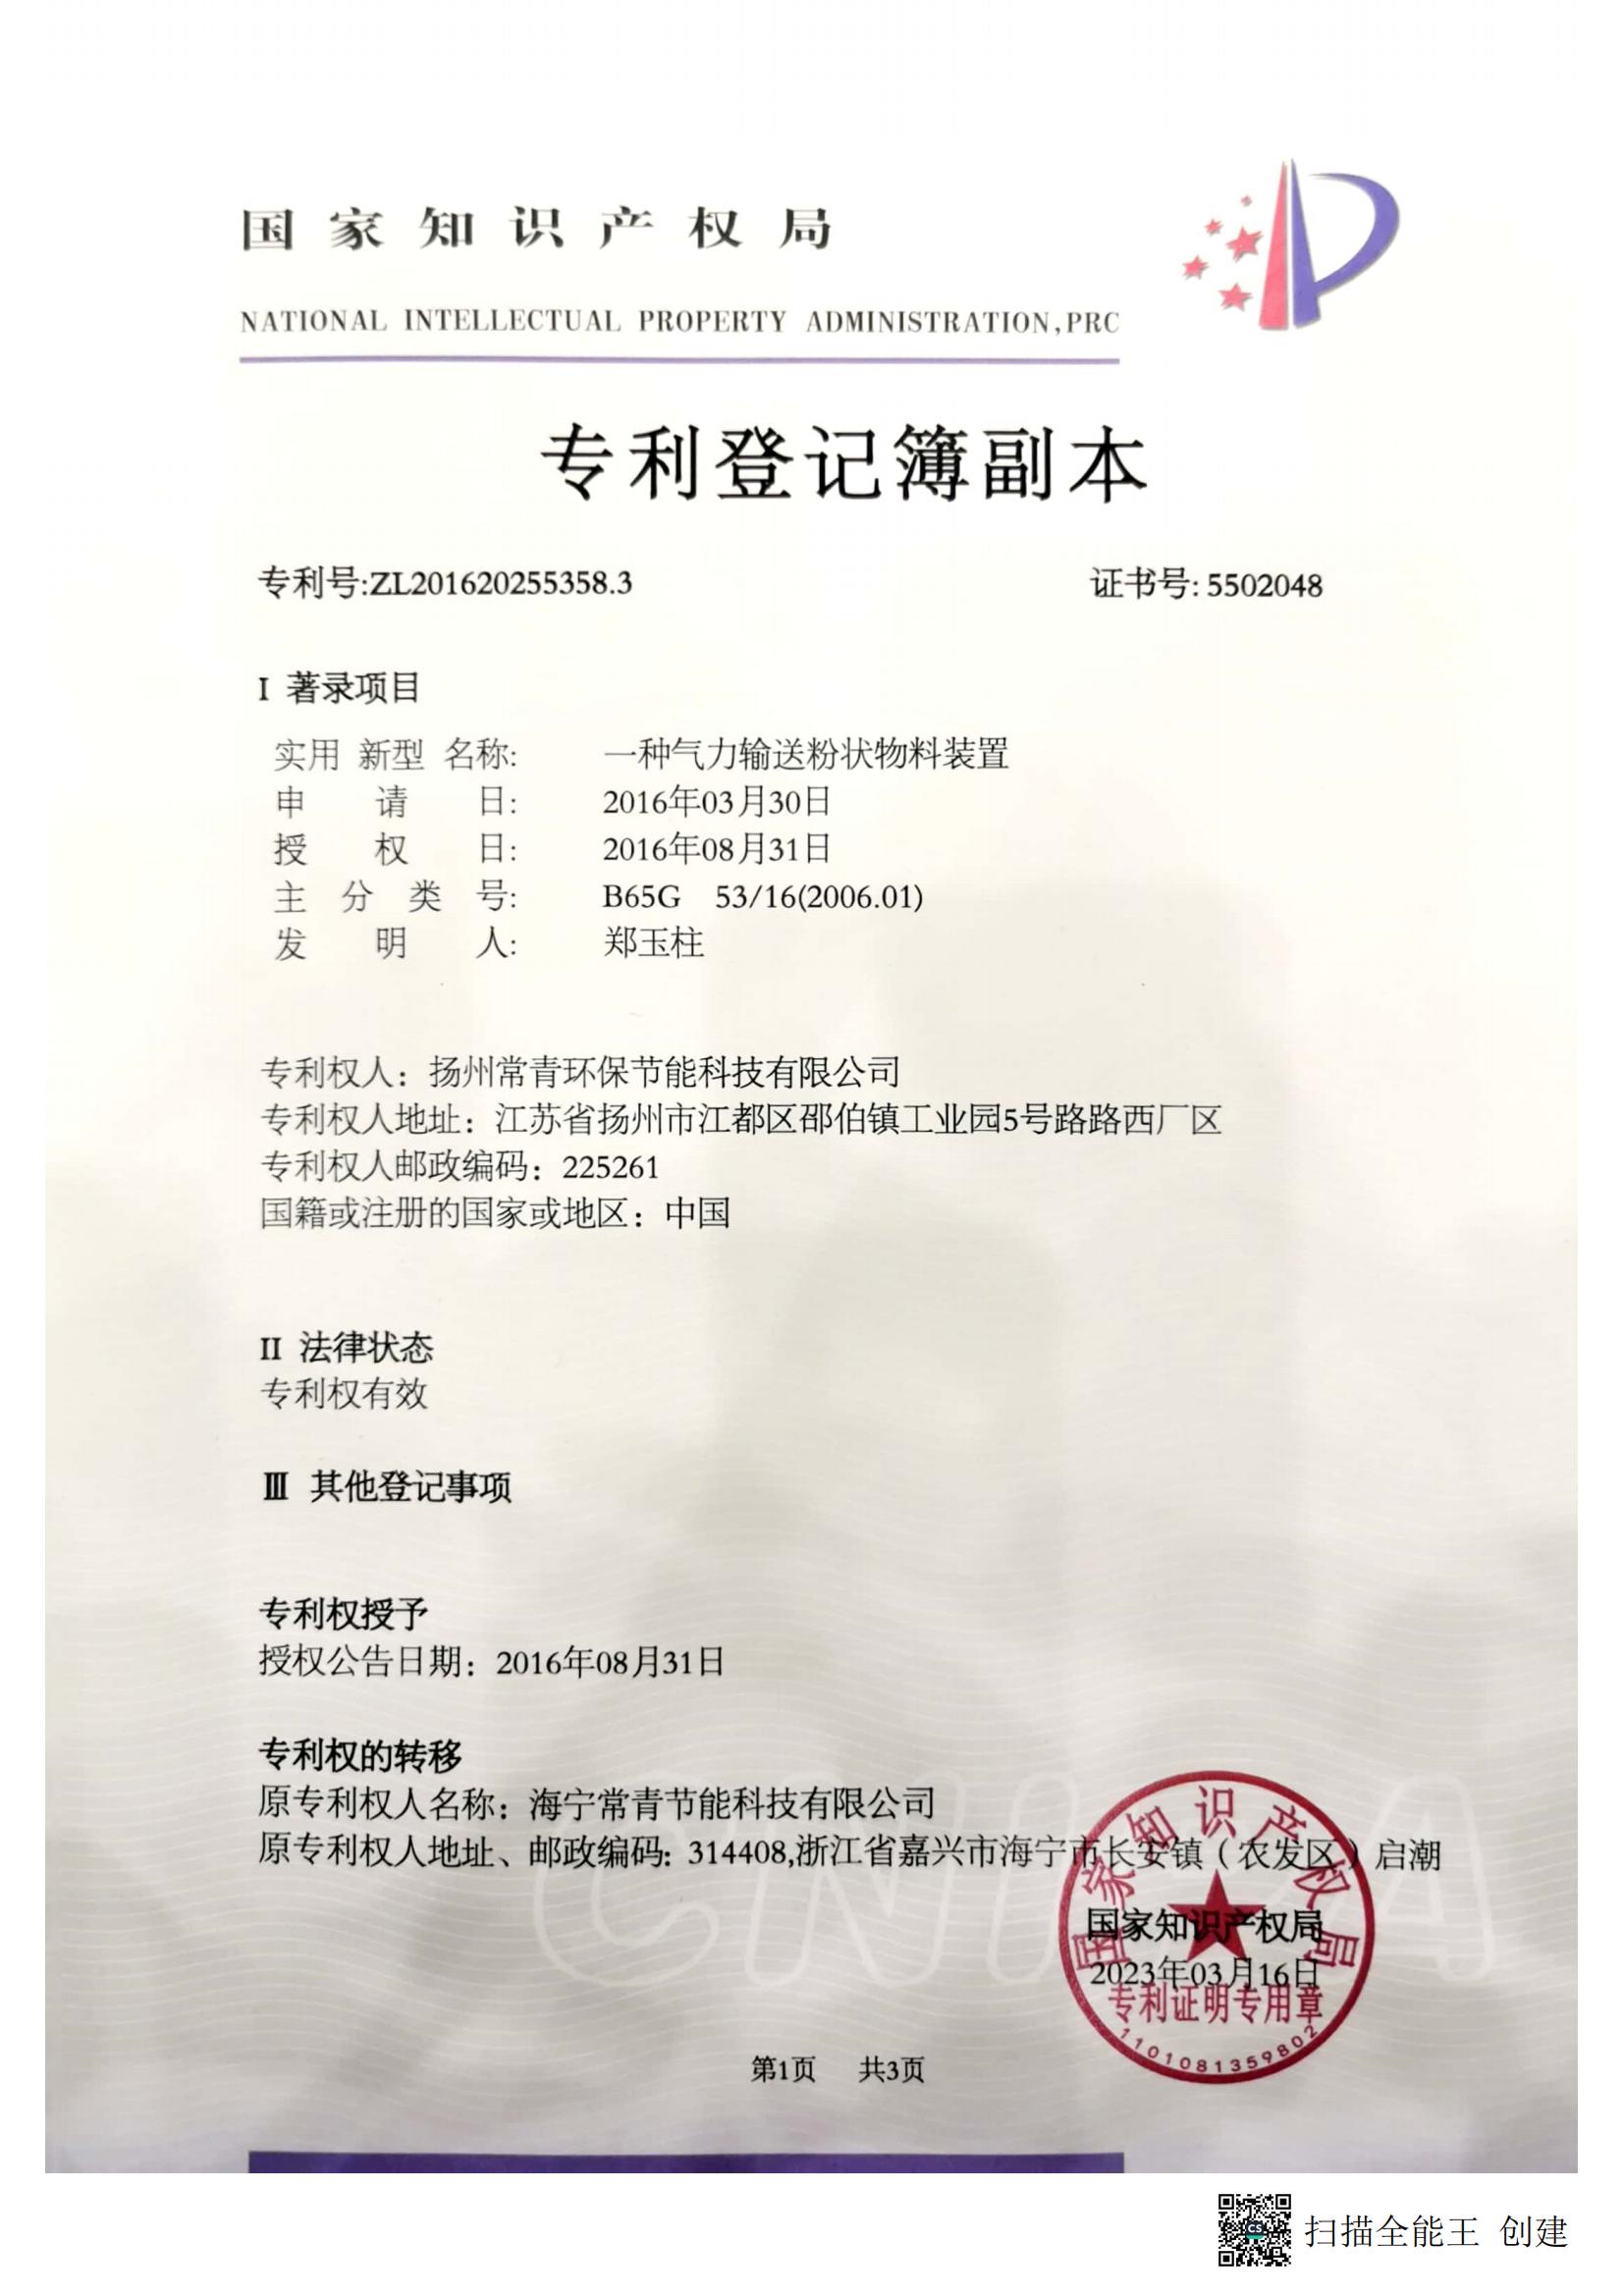 扬州常青环保节能科技有限公司-2016202553583-专利登记簿副本_00